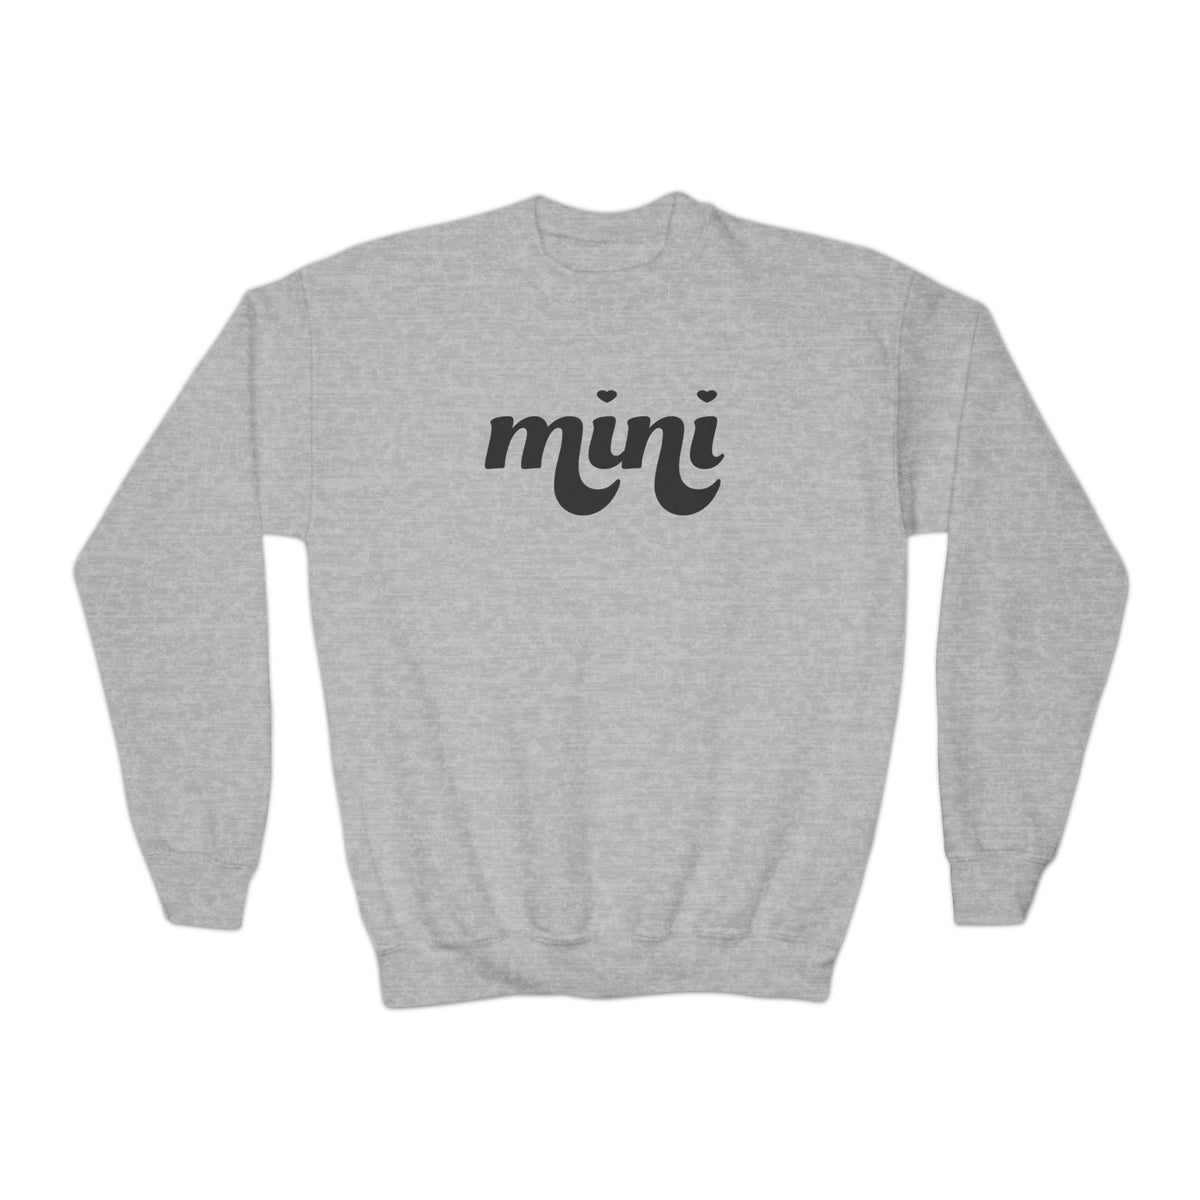 Mini youth Crewneck Sweatshirt | Mama and Mini Matching Sweatshirts